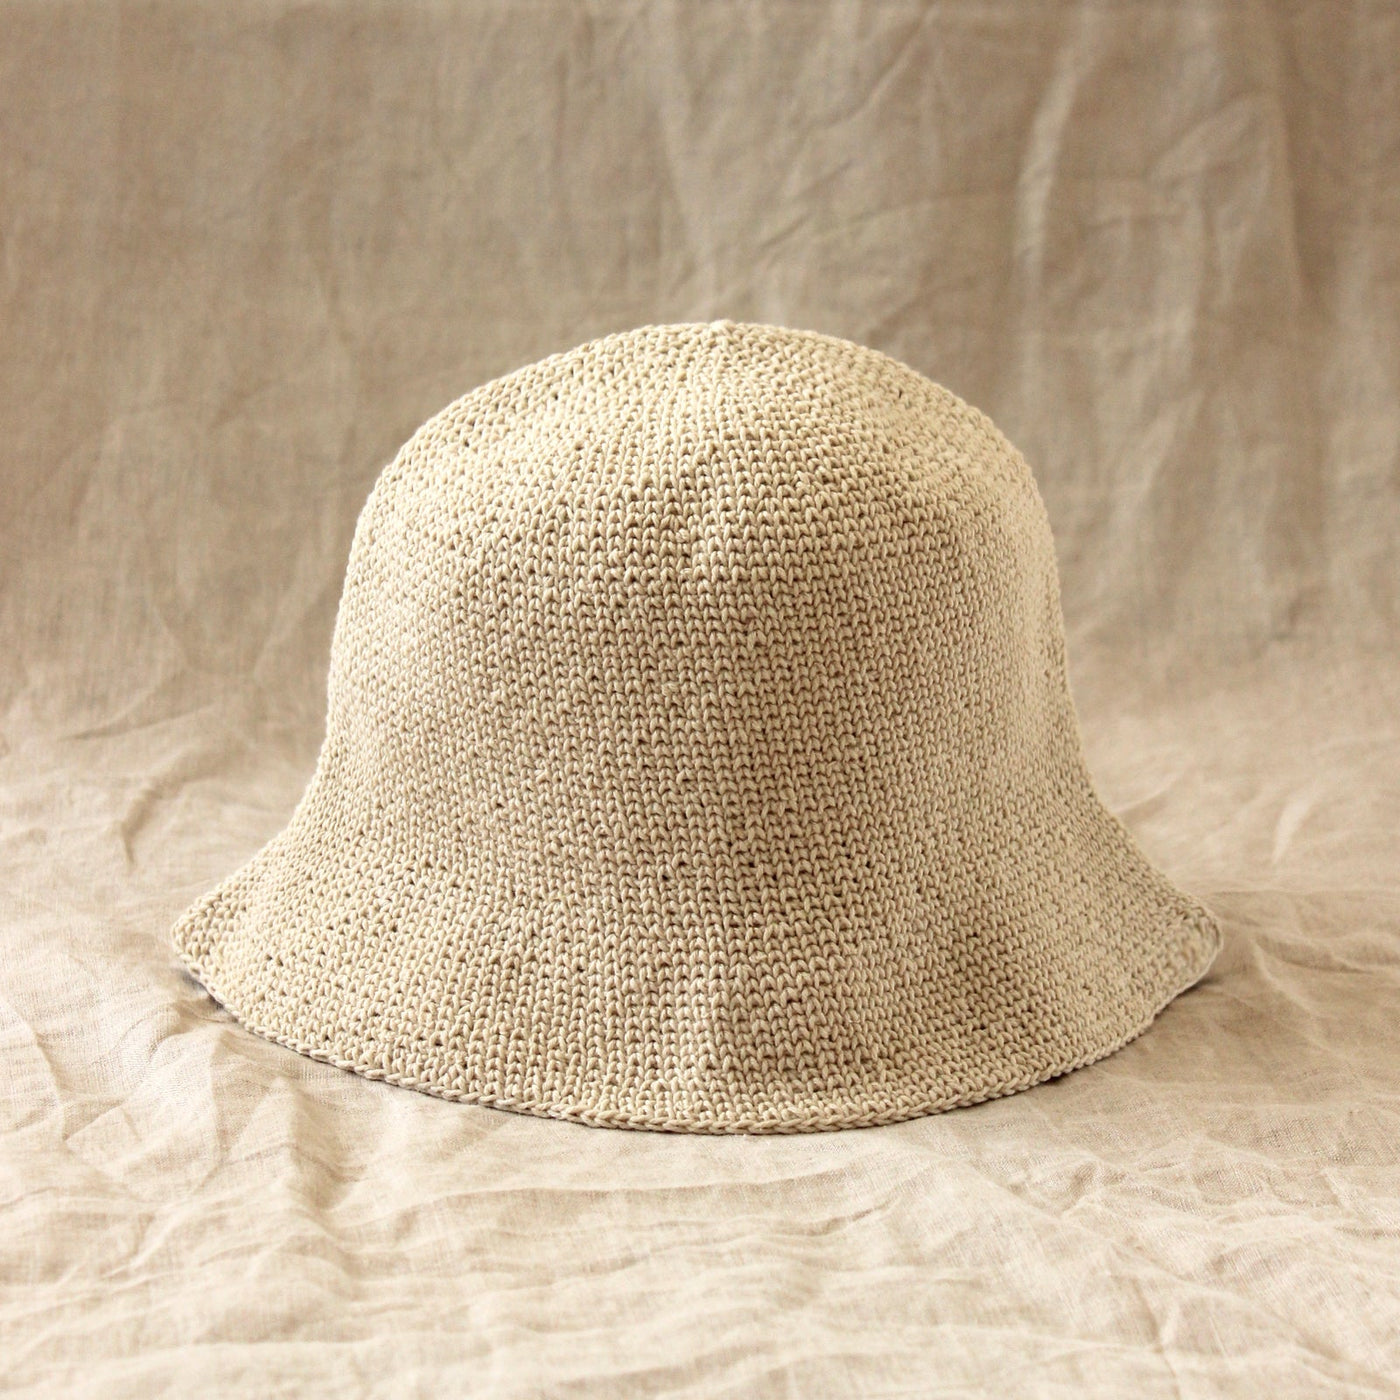 FLORETTE Crochet Bucket Hat, in Nude White by BrunnaCo